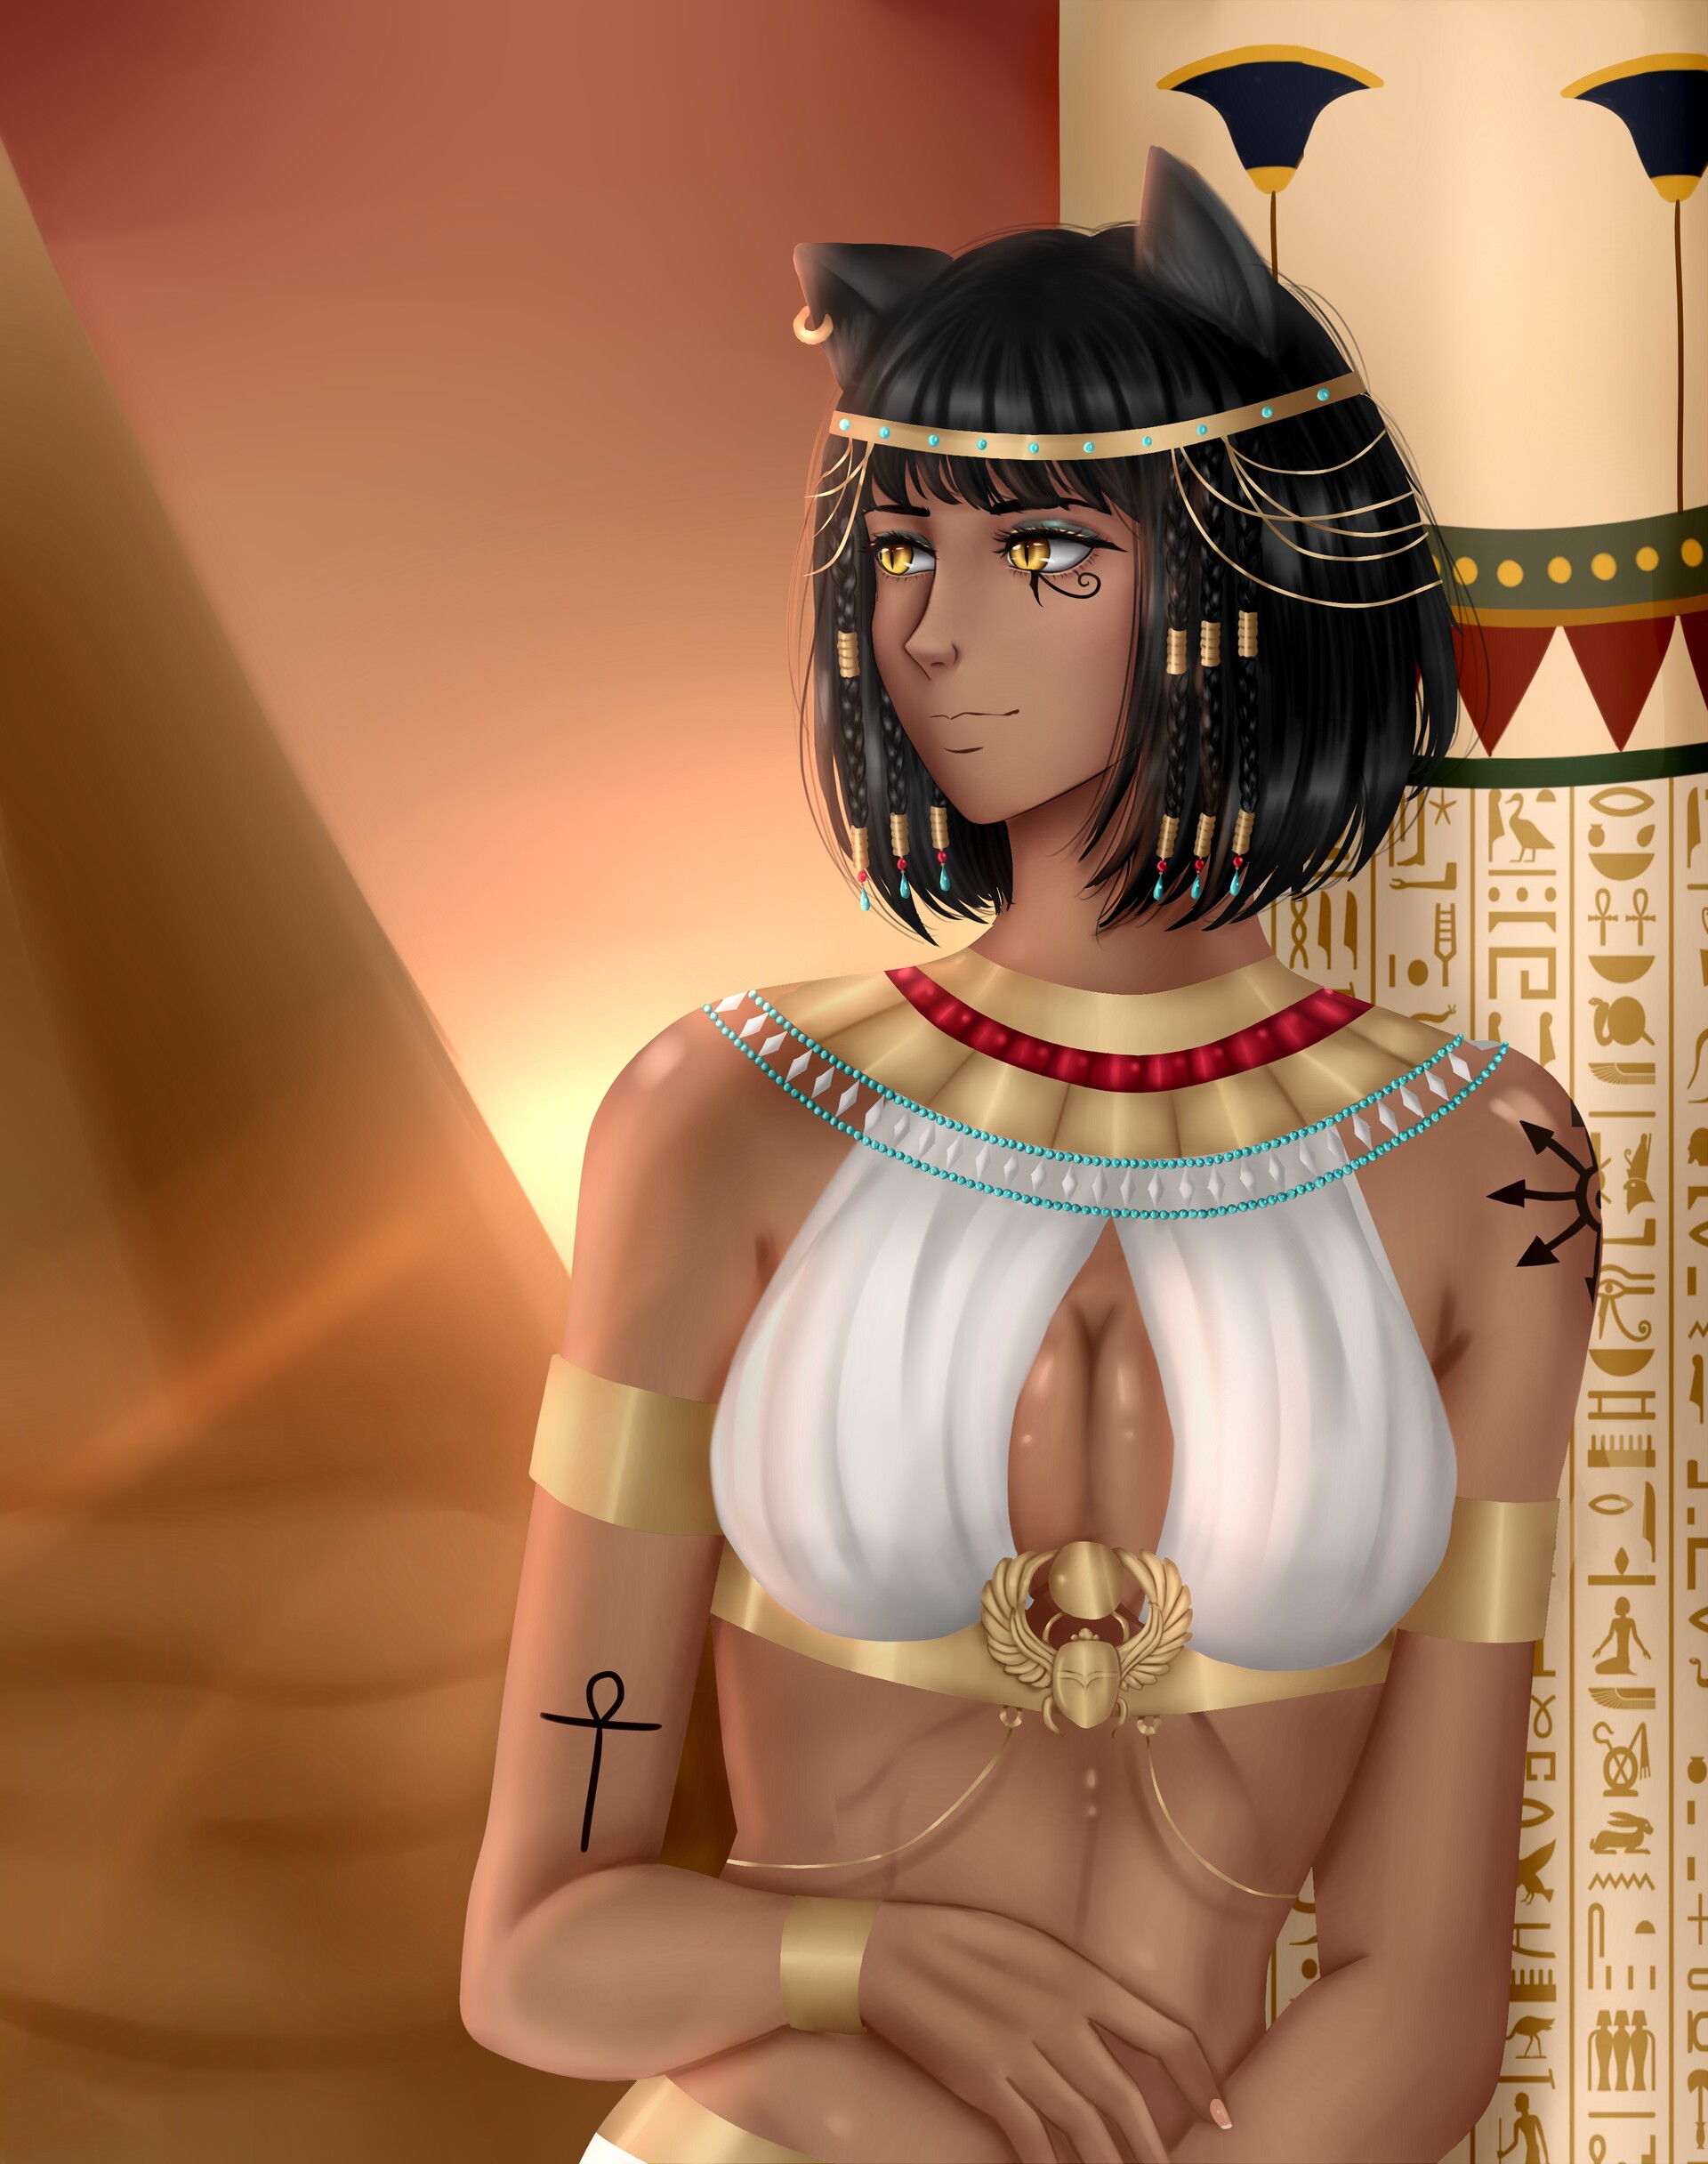 ArtStation - Egyptian goddess girl- Netheb